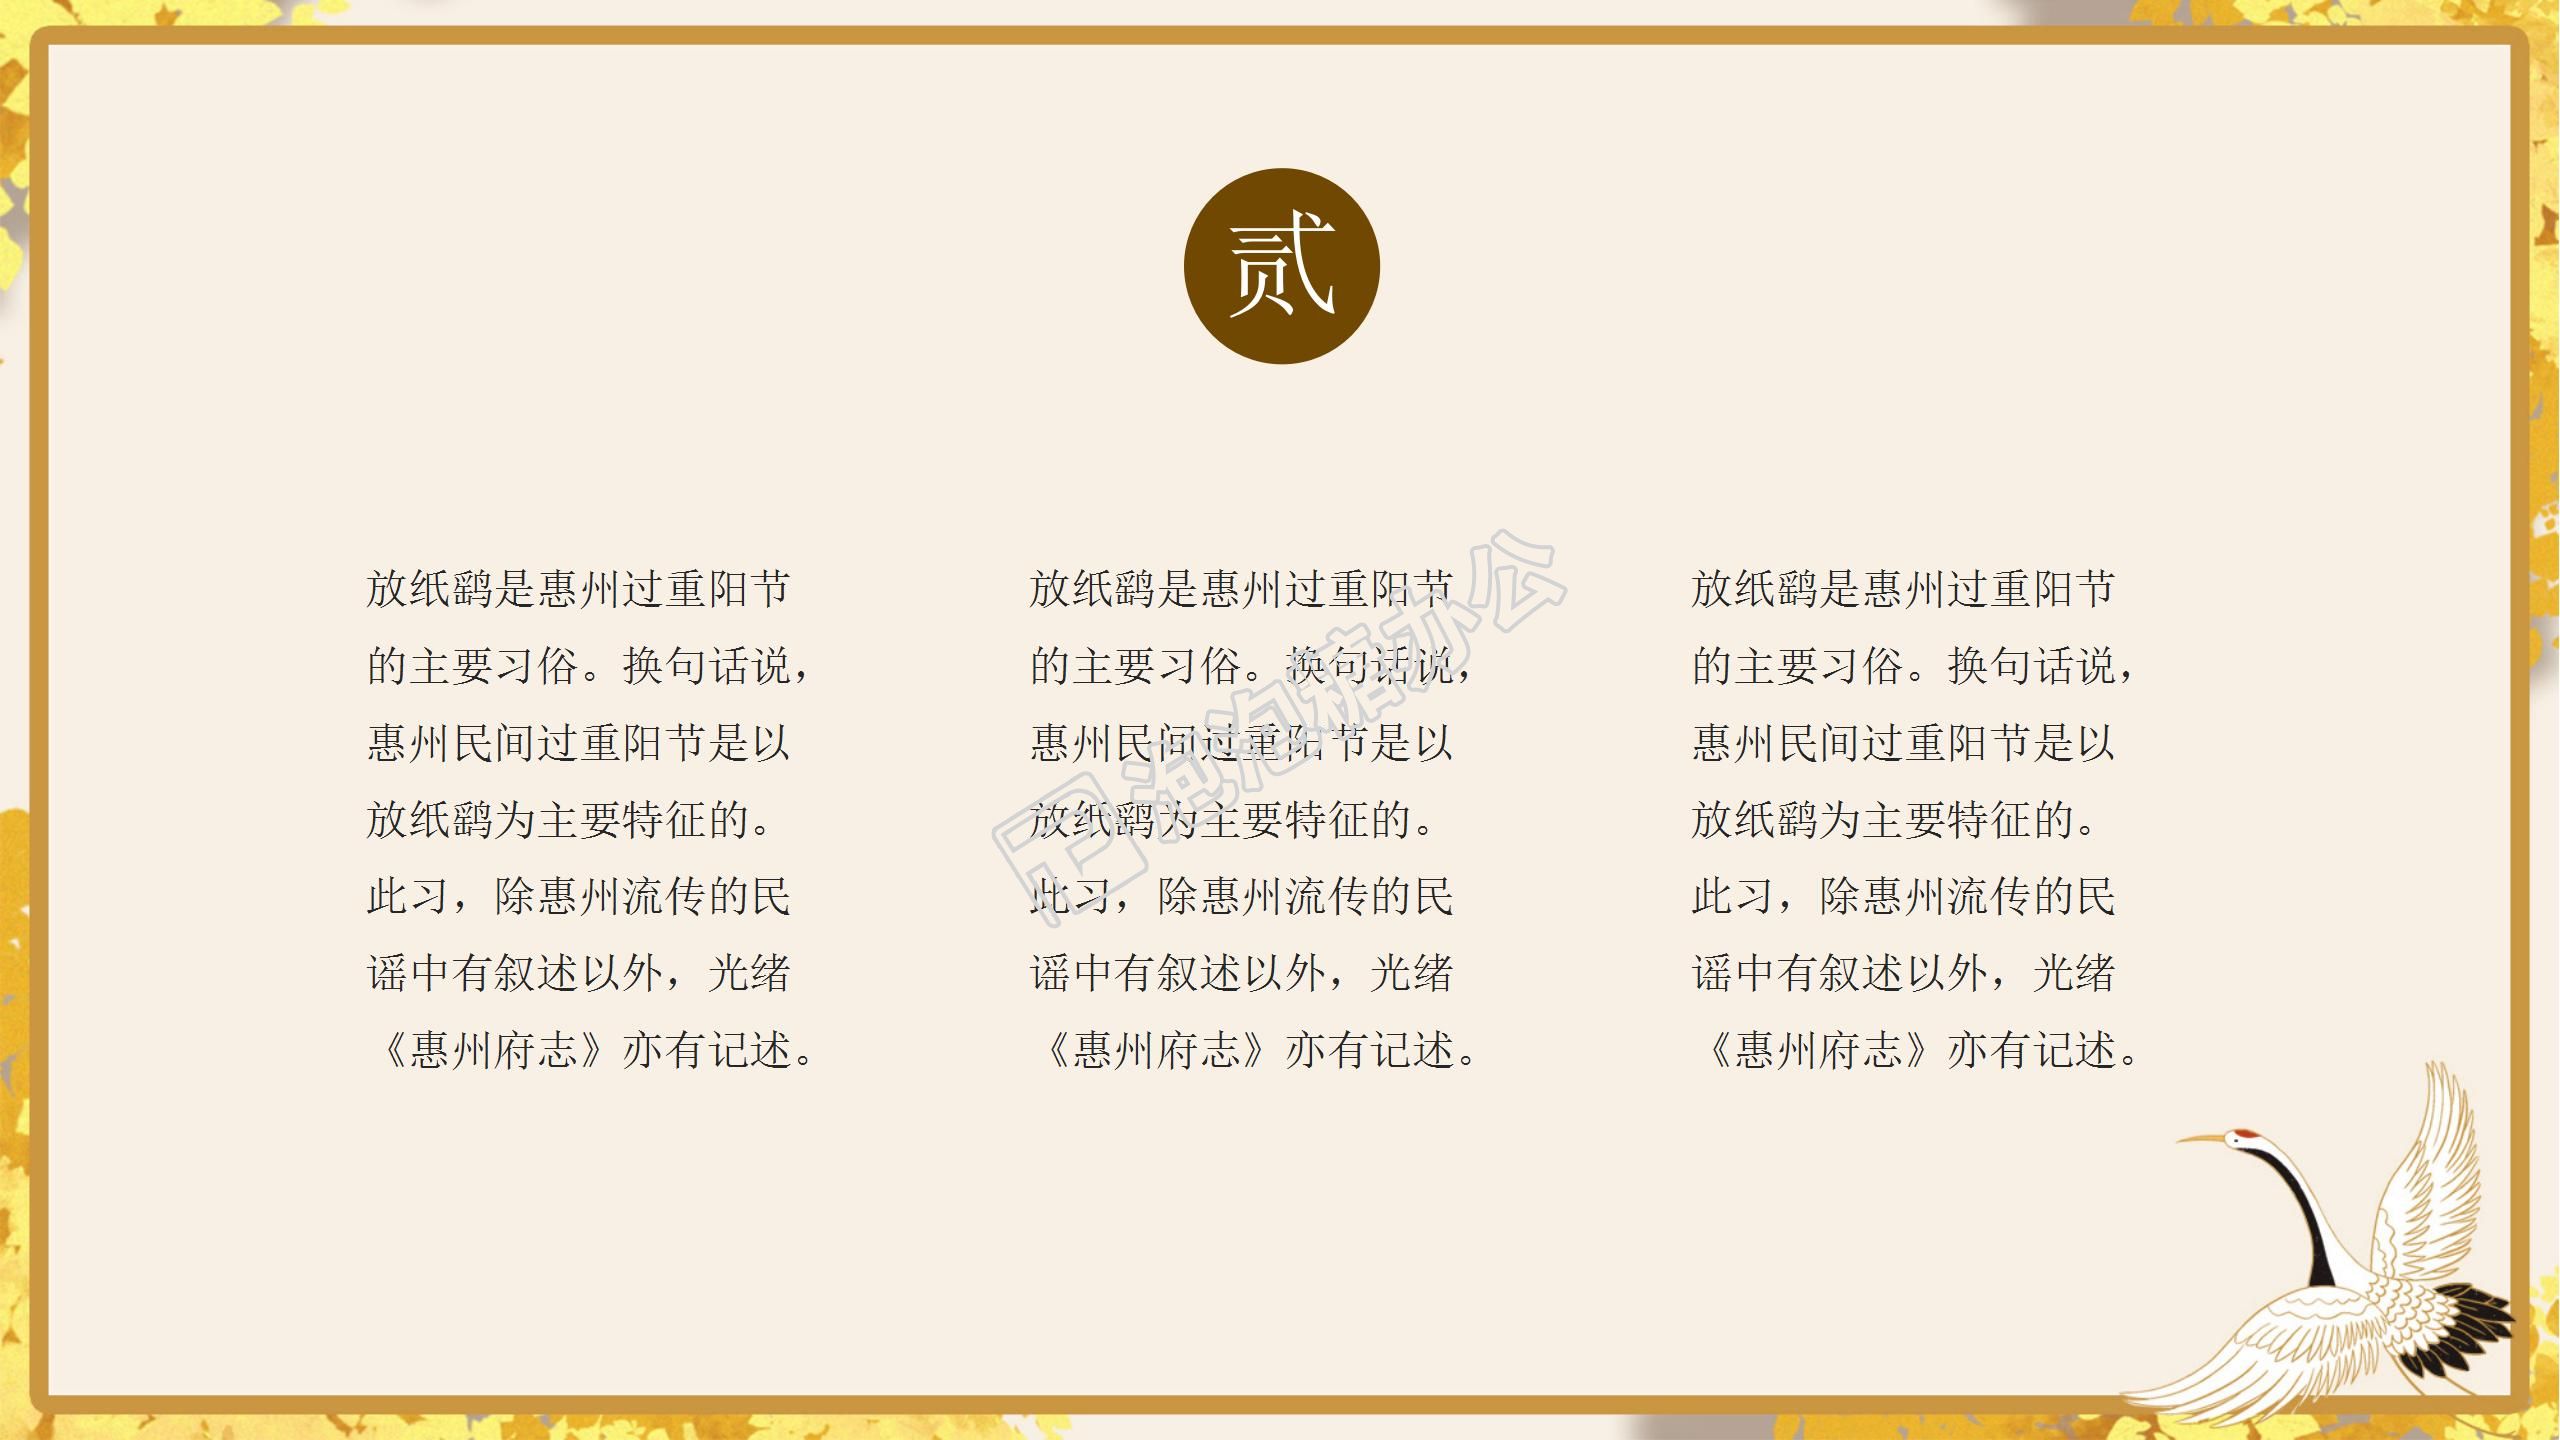 黄色温馨卡通九九重阳节由来活动策划节日宣传ppt模板